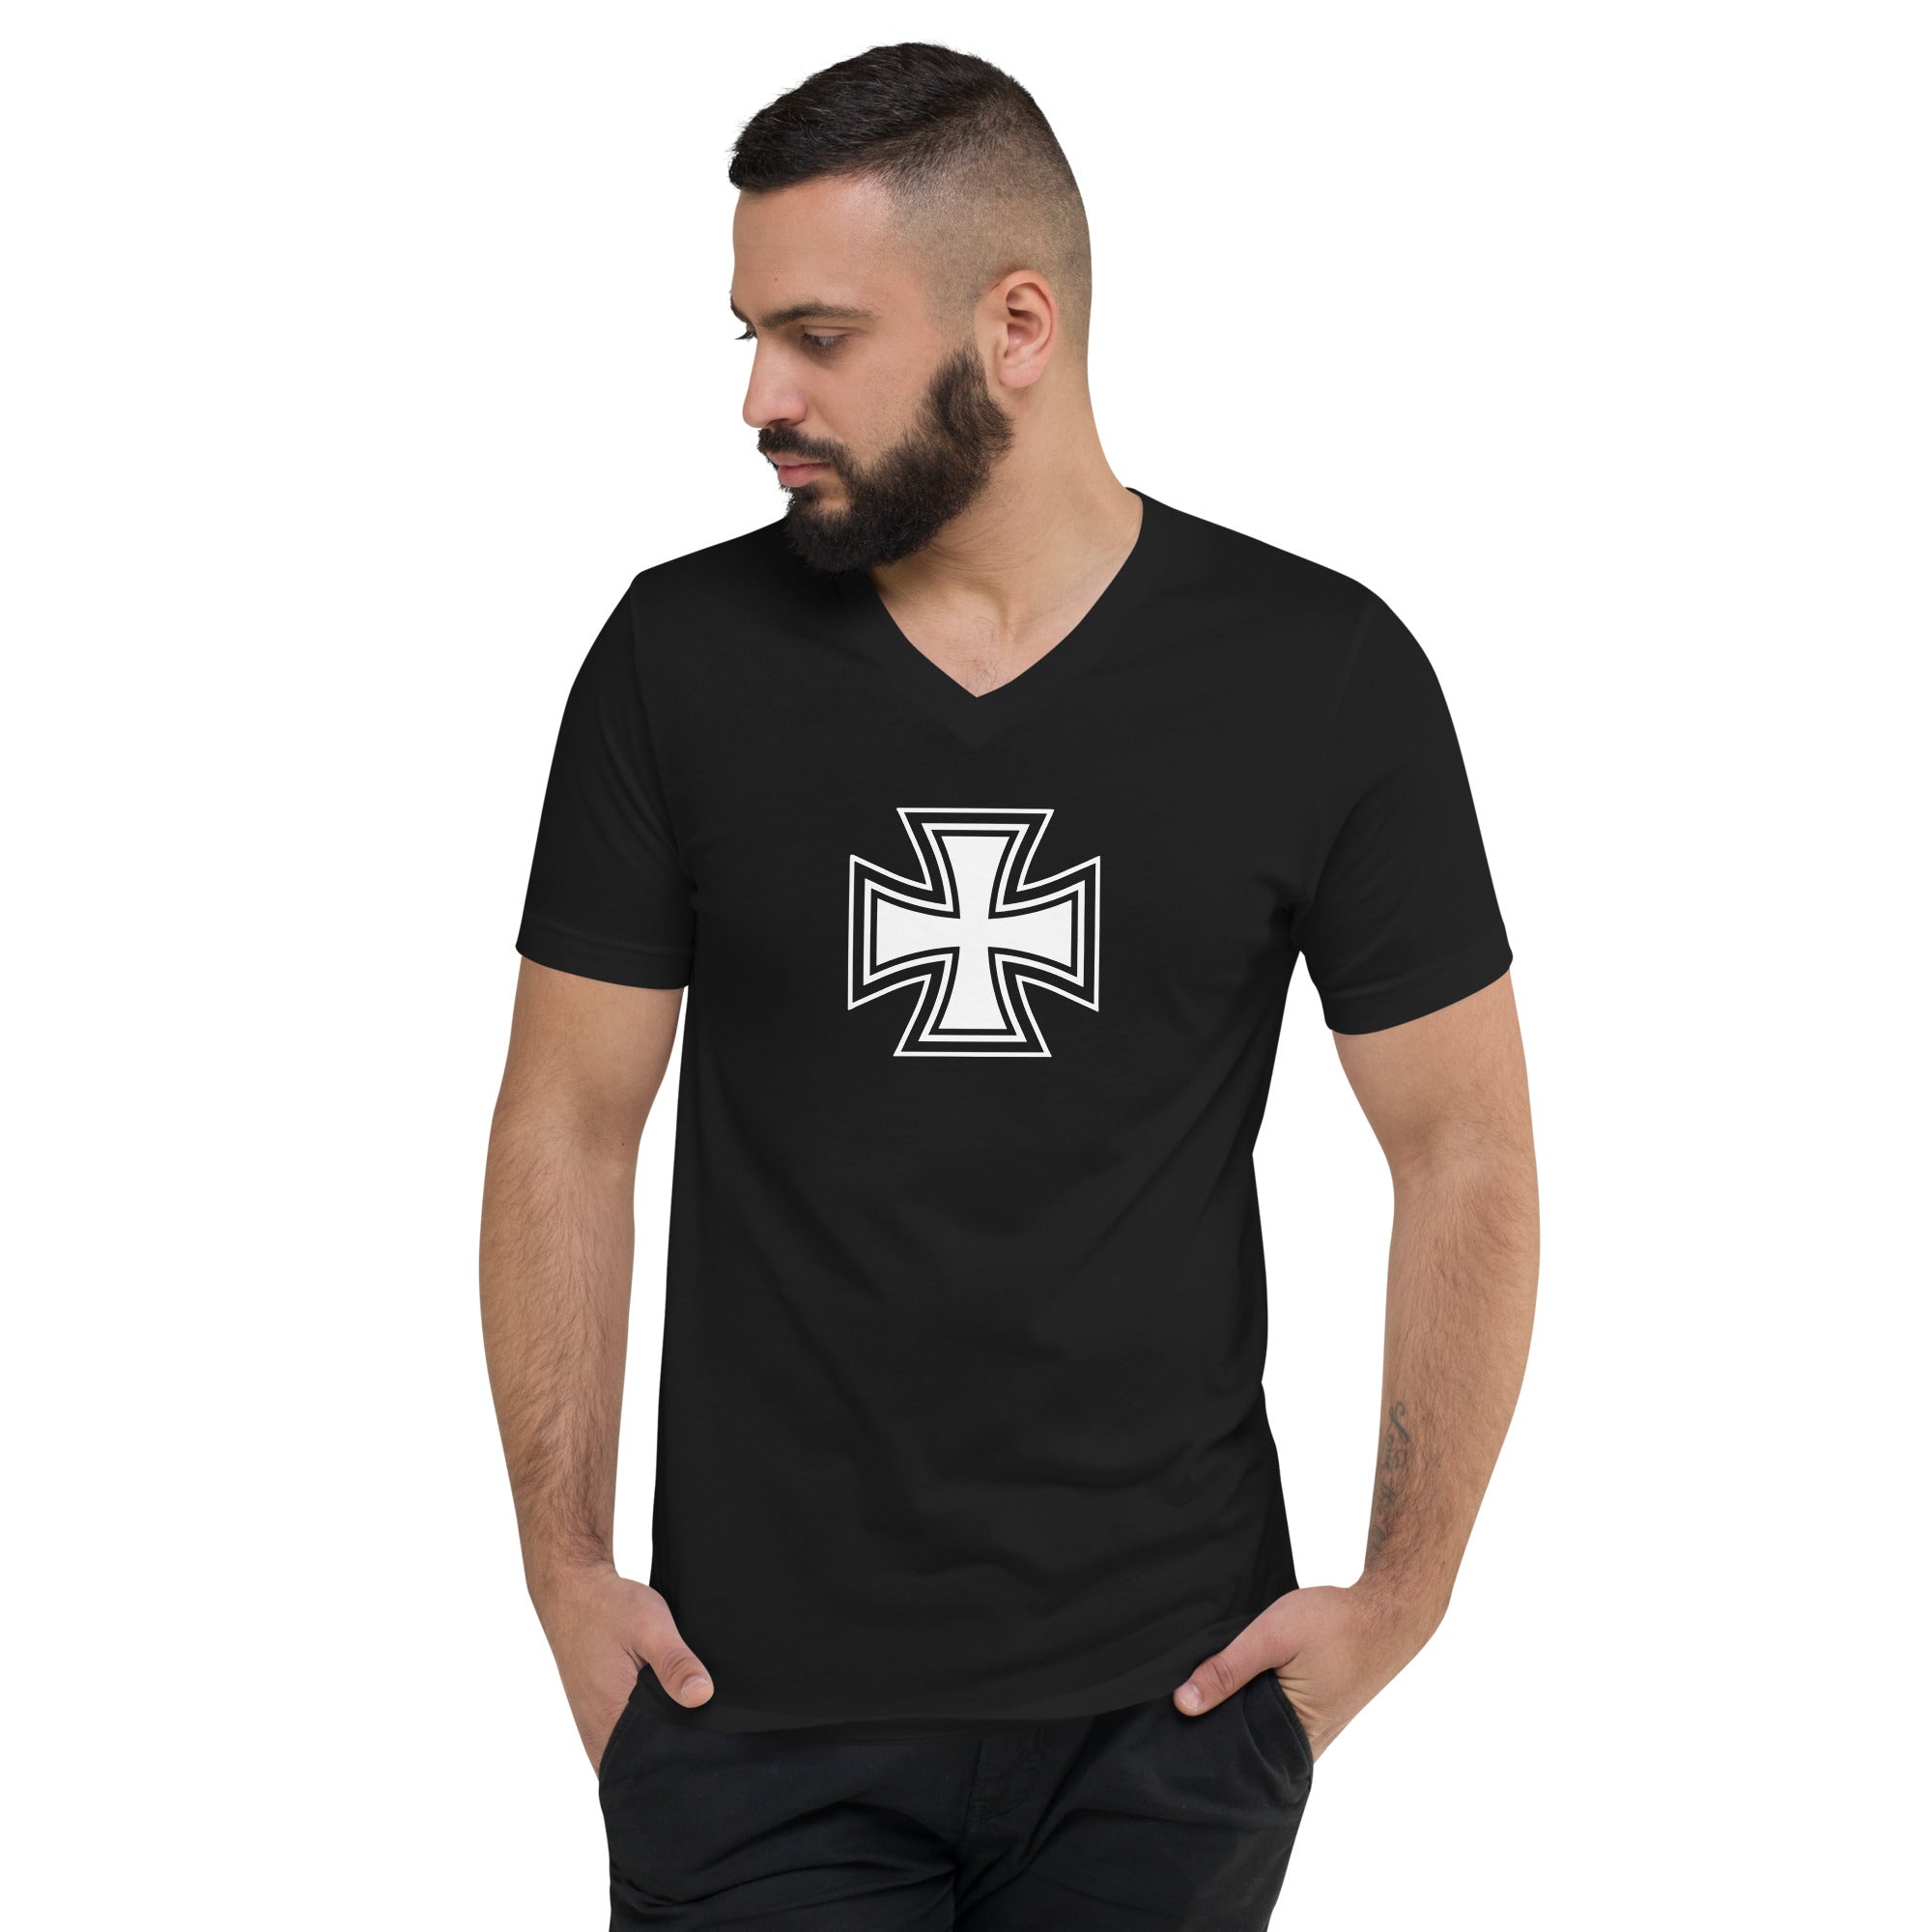 Black and White Occult Biker Cross Symbol Short Sleeve V-Neck T-Shirt